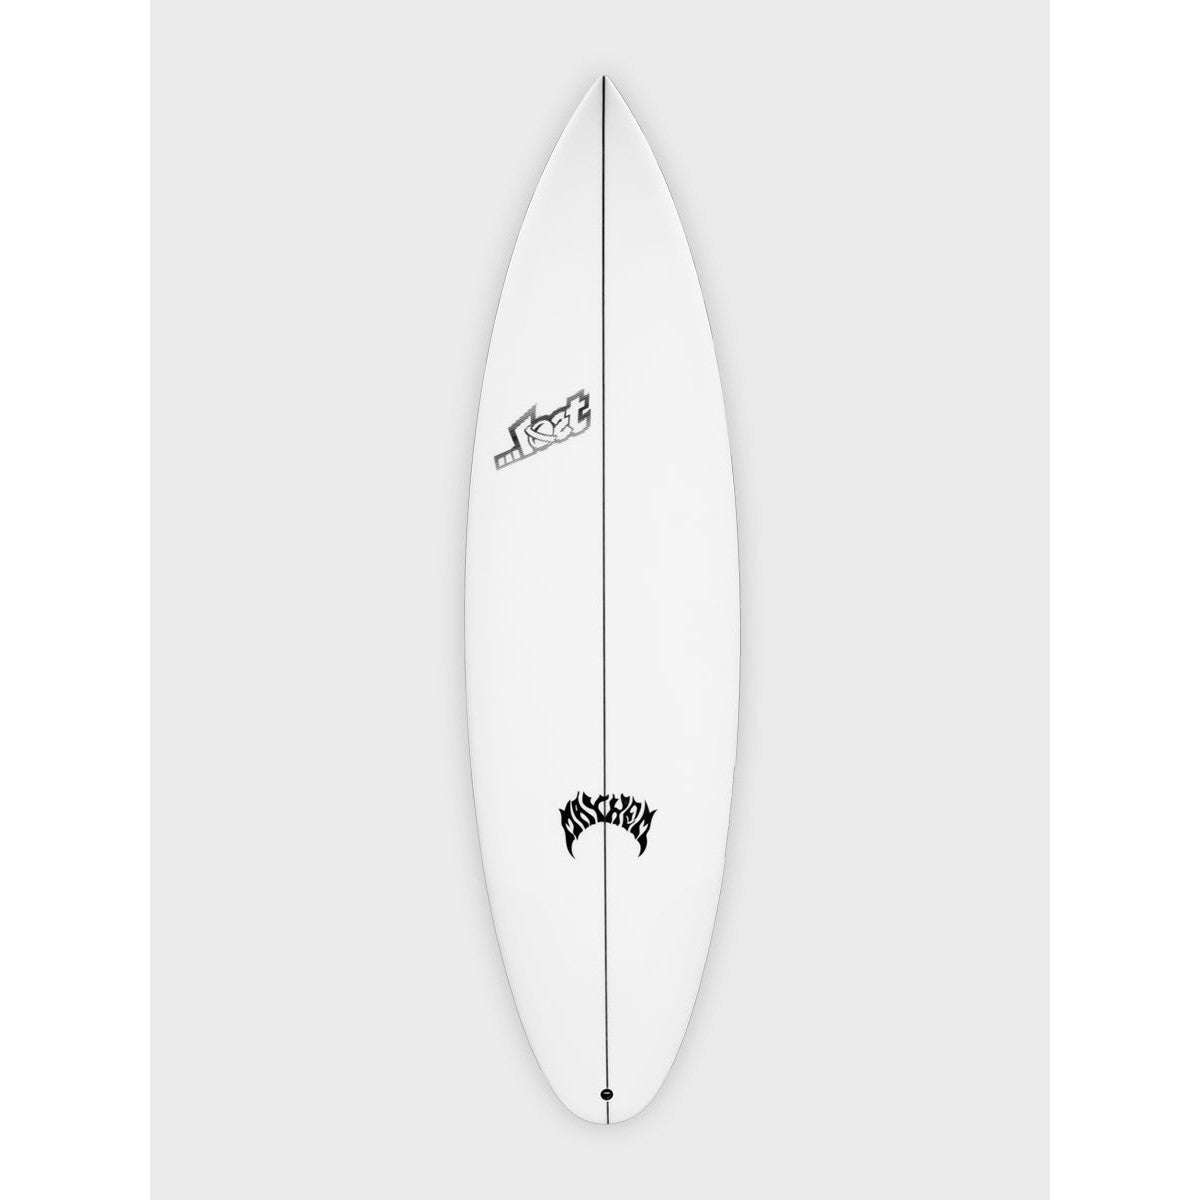 lost_surfboards-driver-3.0-deck-round-galway-ireland-blacksheepsurfco